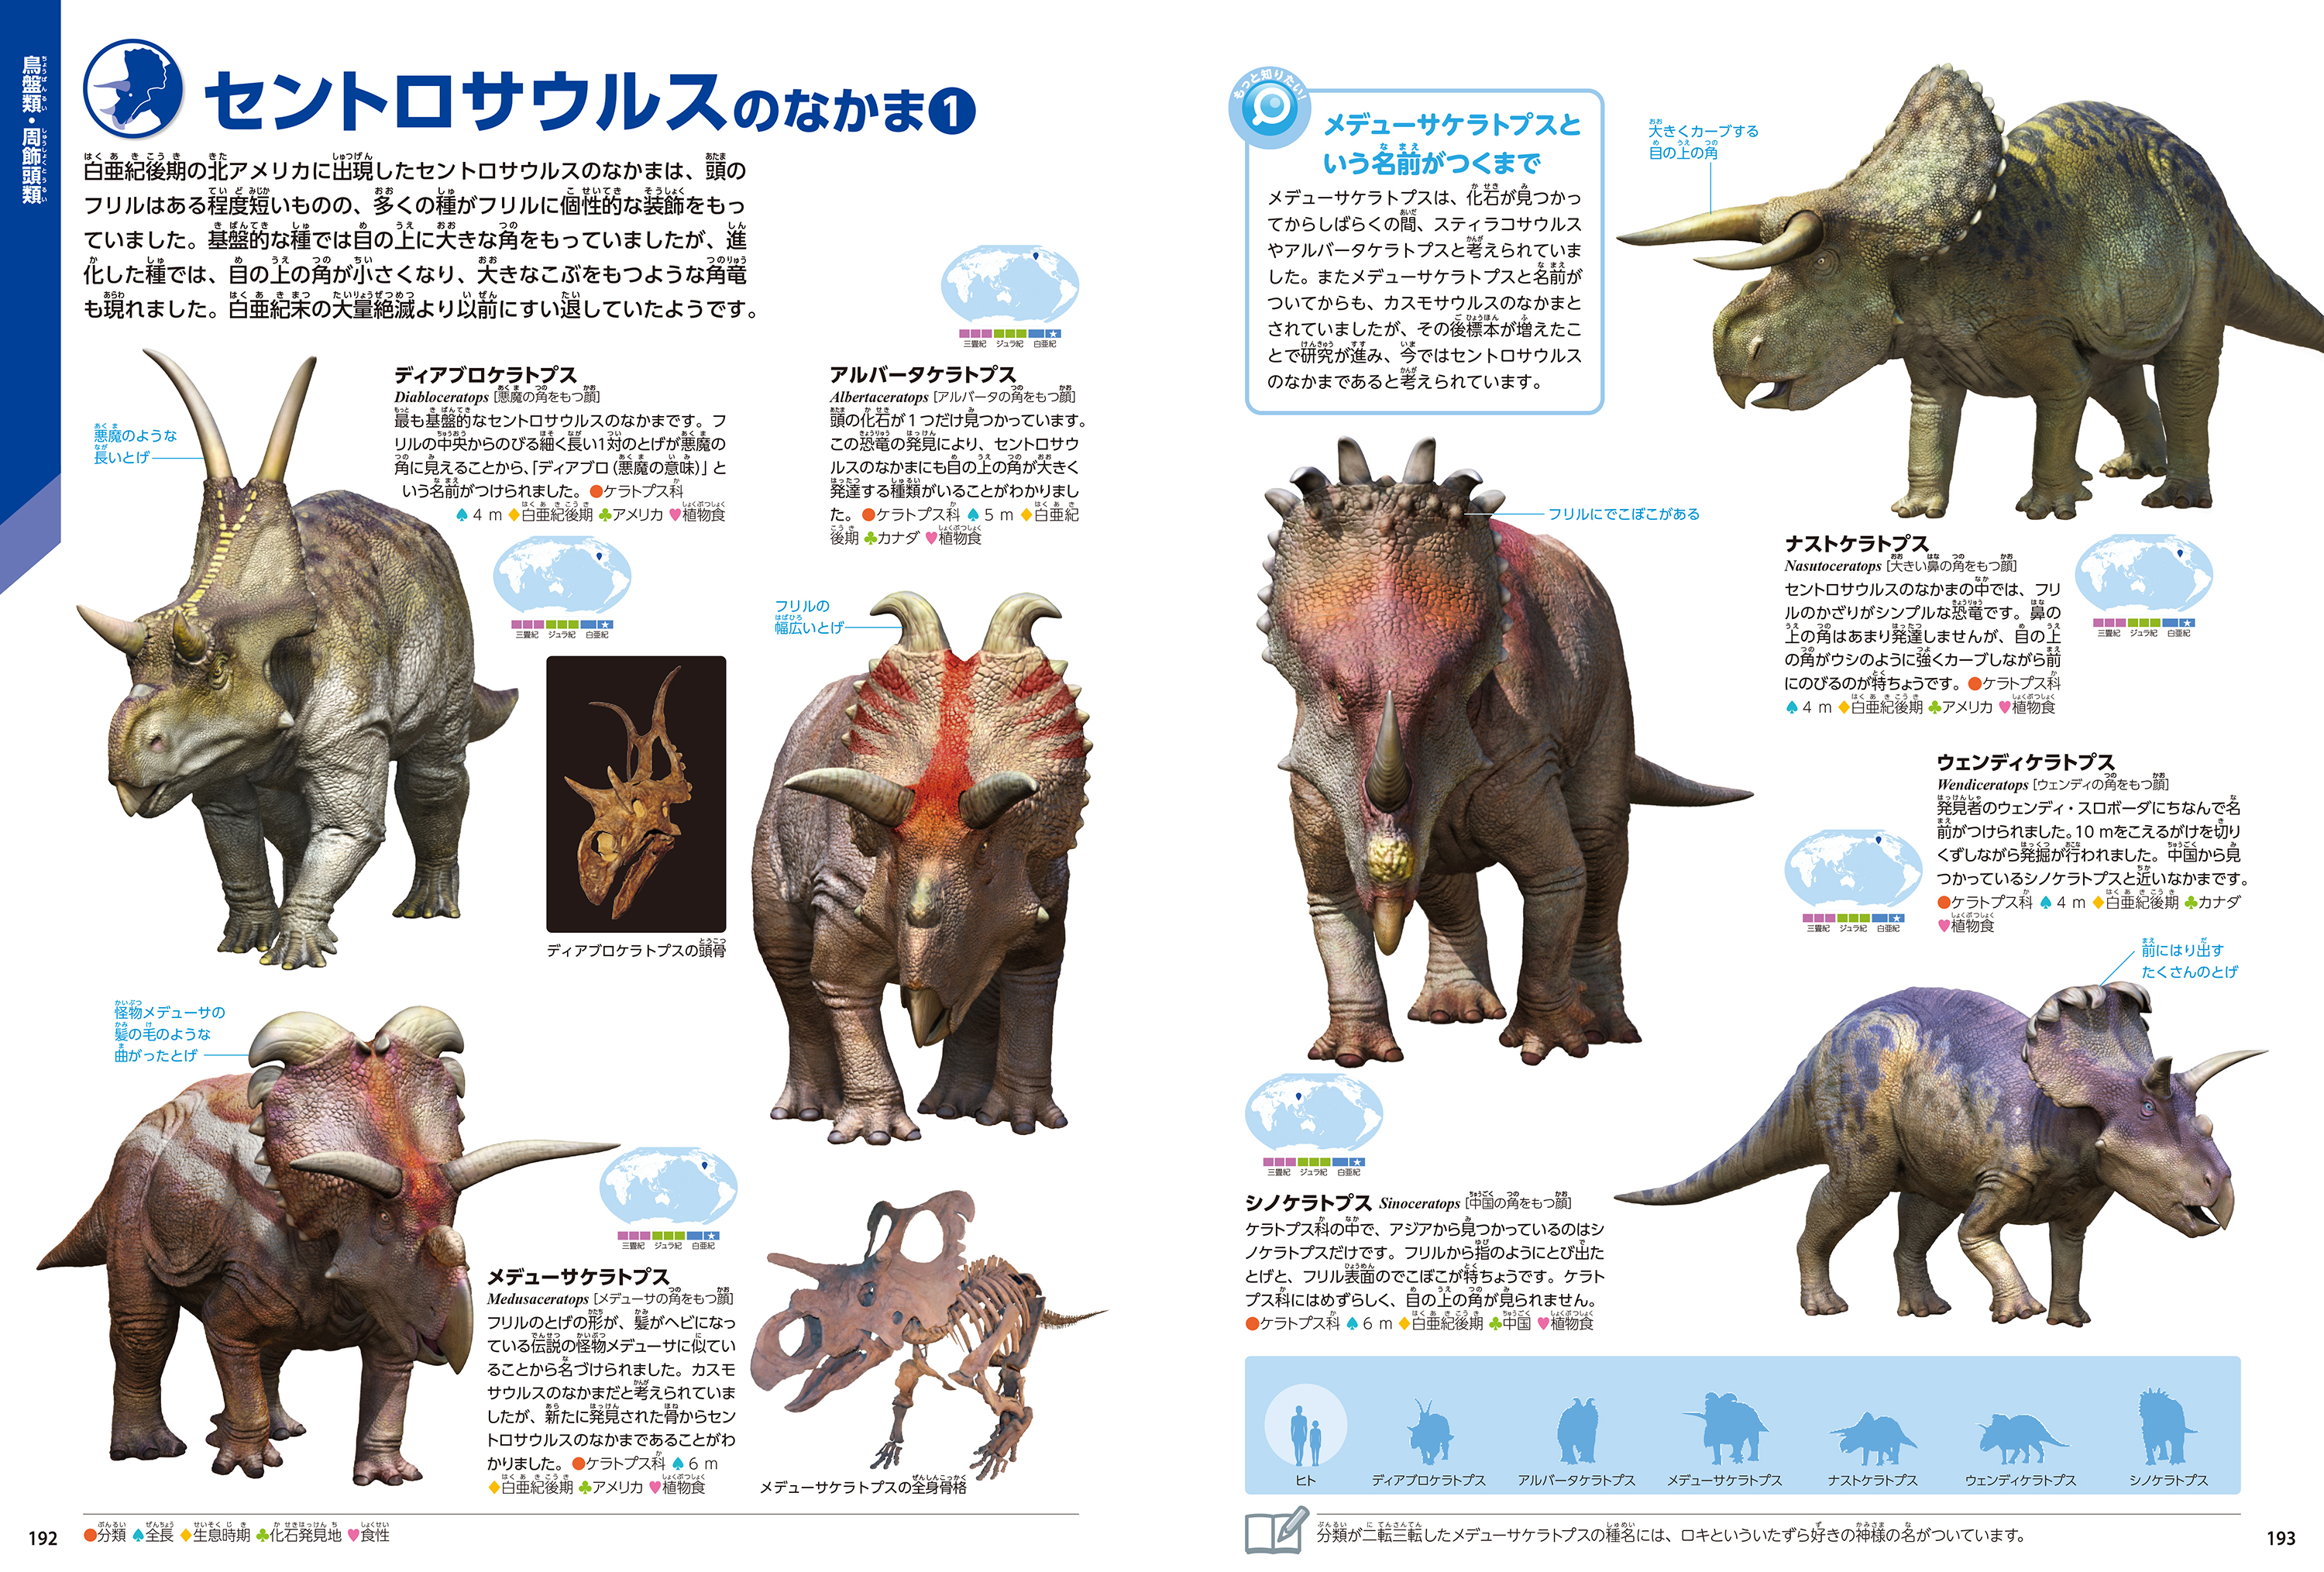 「セントロサウルスのなかま」紙面